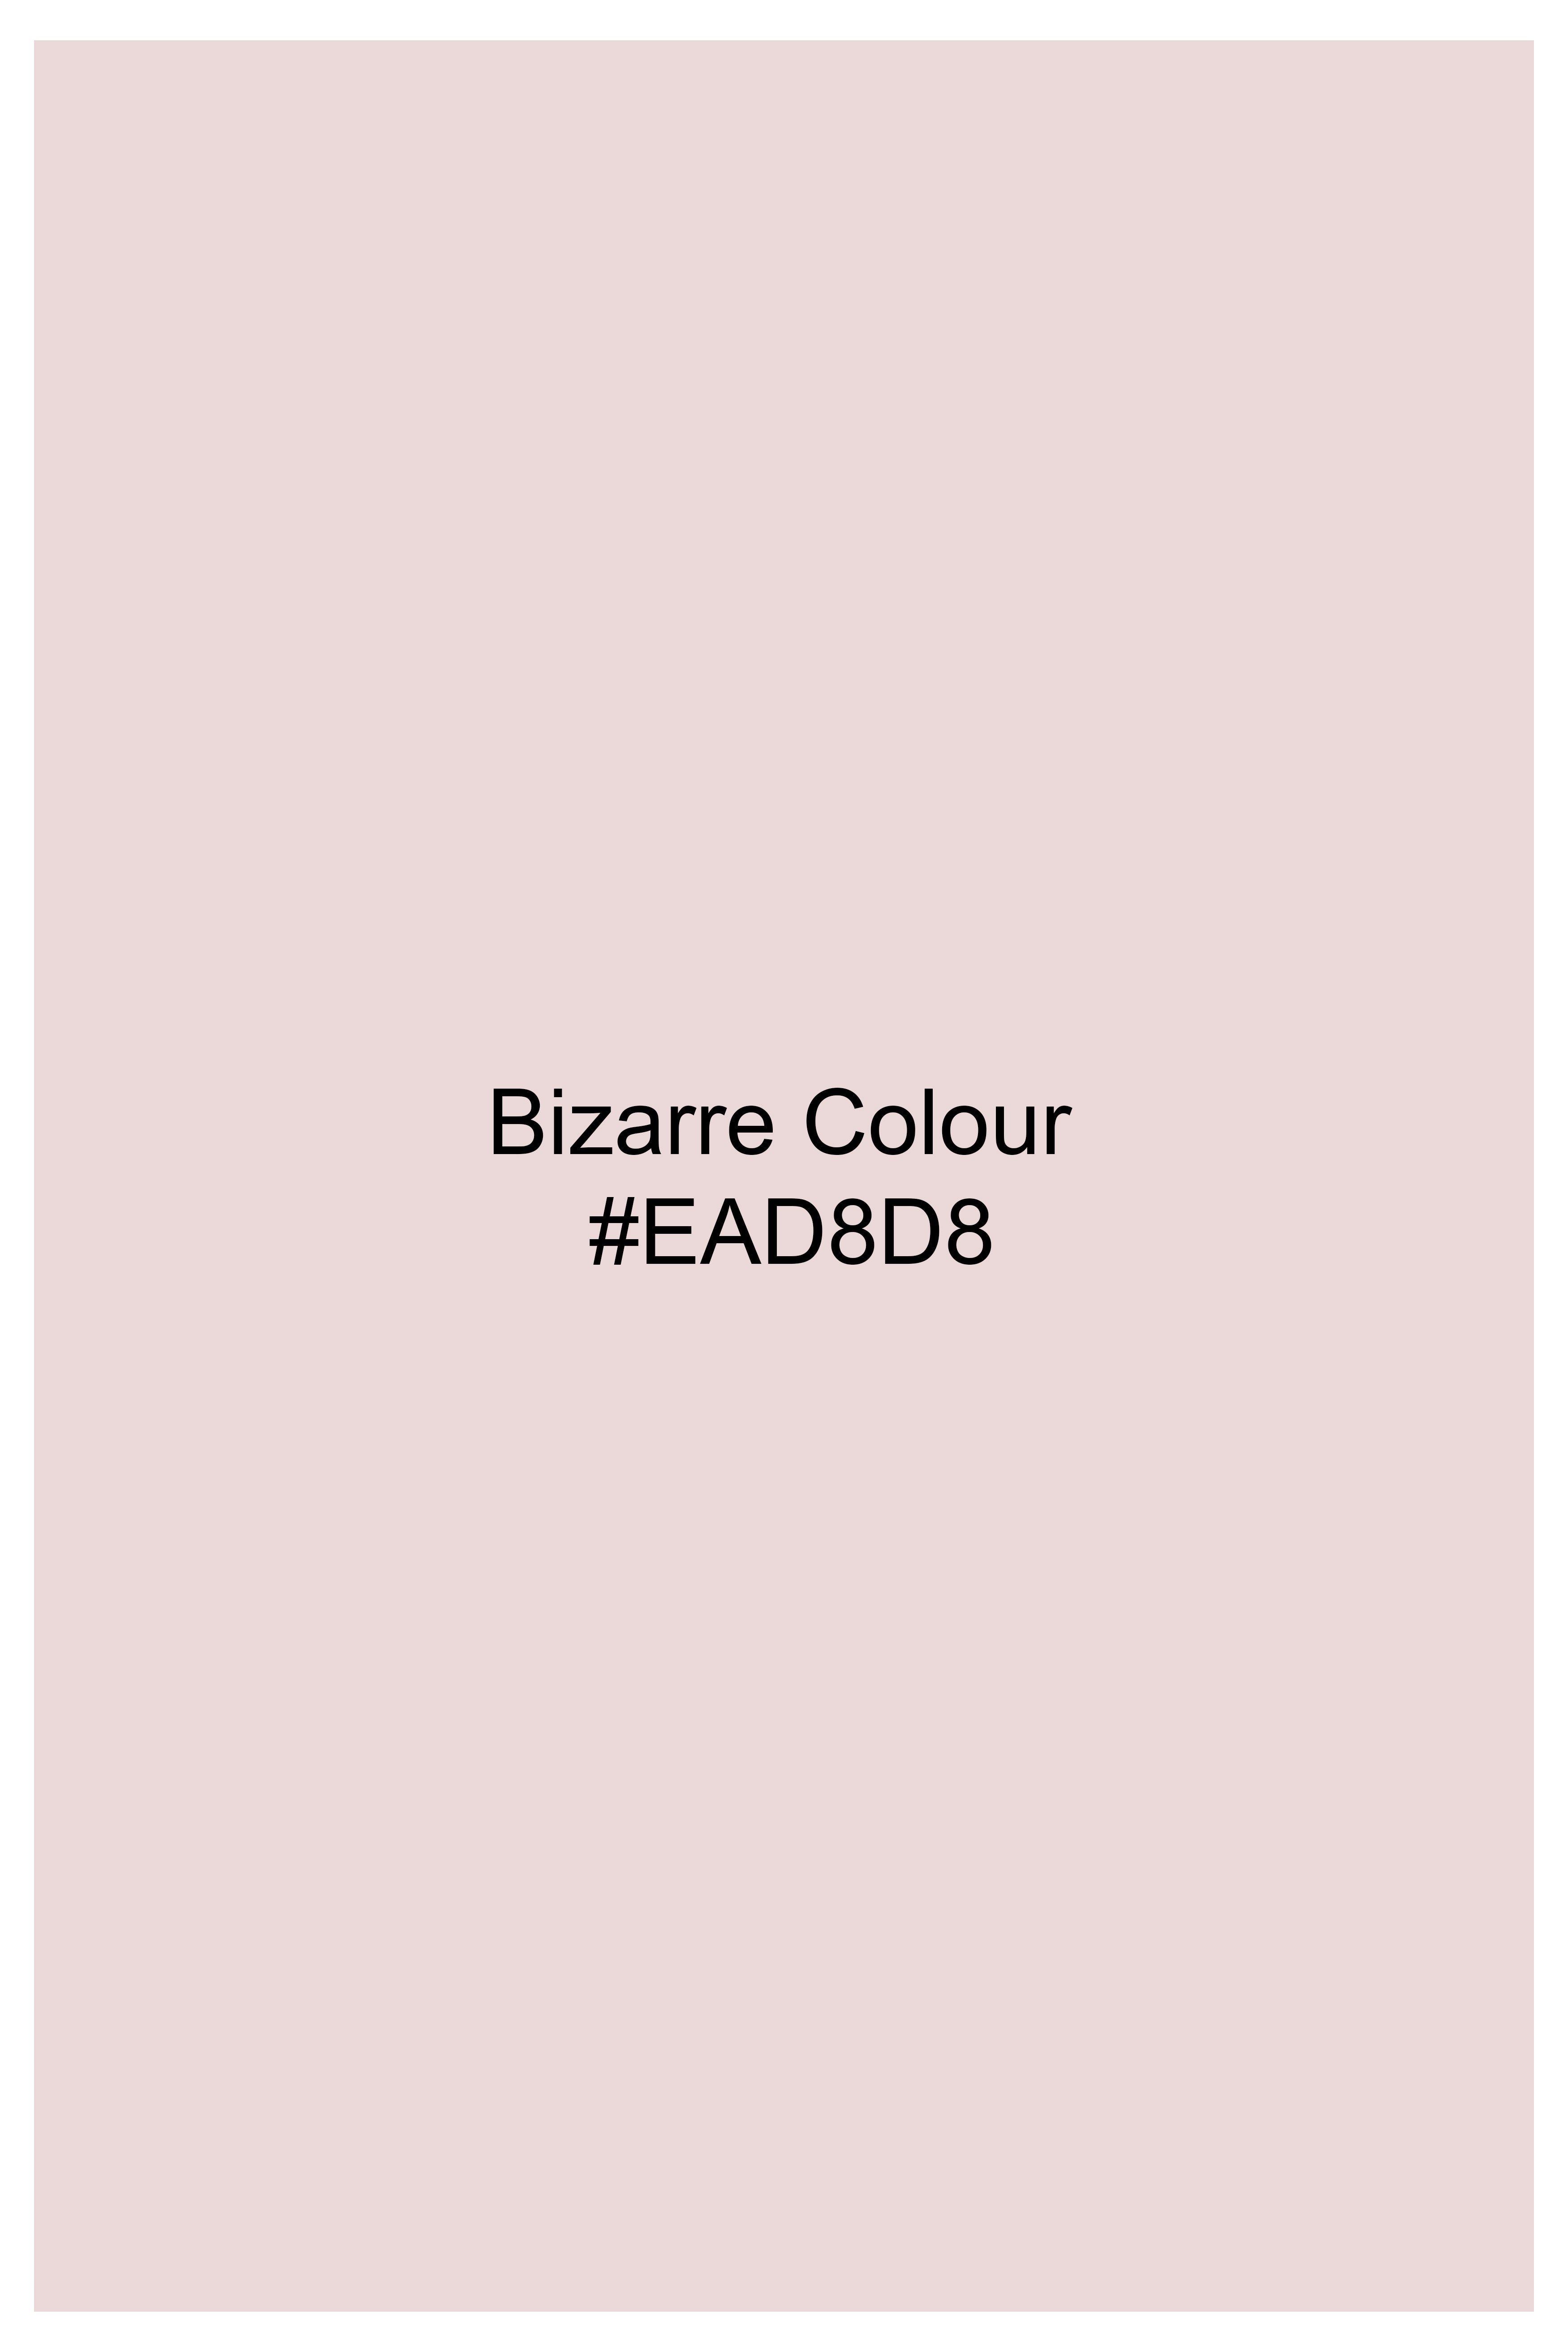 Bizarre Pink Super Soft Premium Cotton Boxer BX540-28, BX540-30, BX540-32, BX540-34, BX540-36, BX540-38, BX540-40, BX540-42, BX540-44